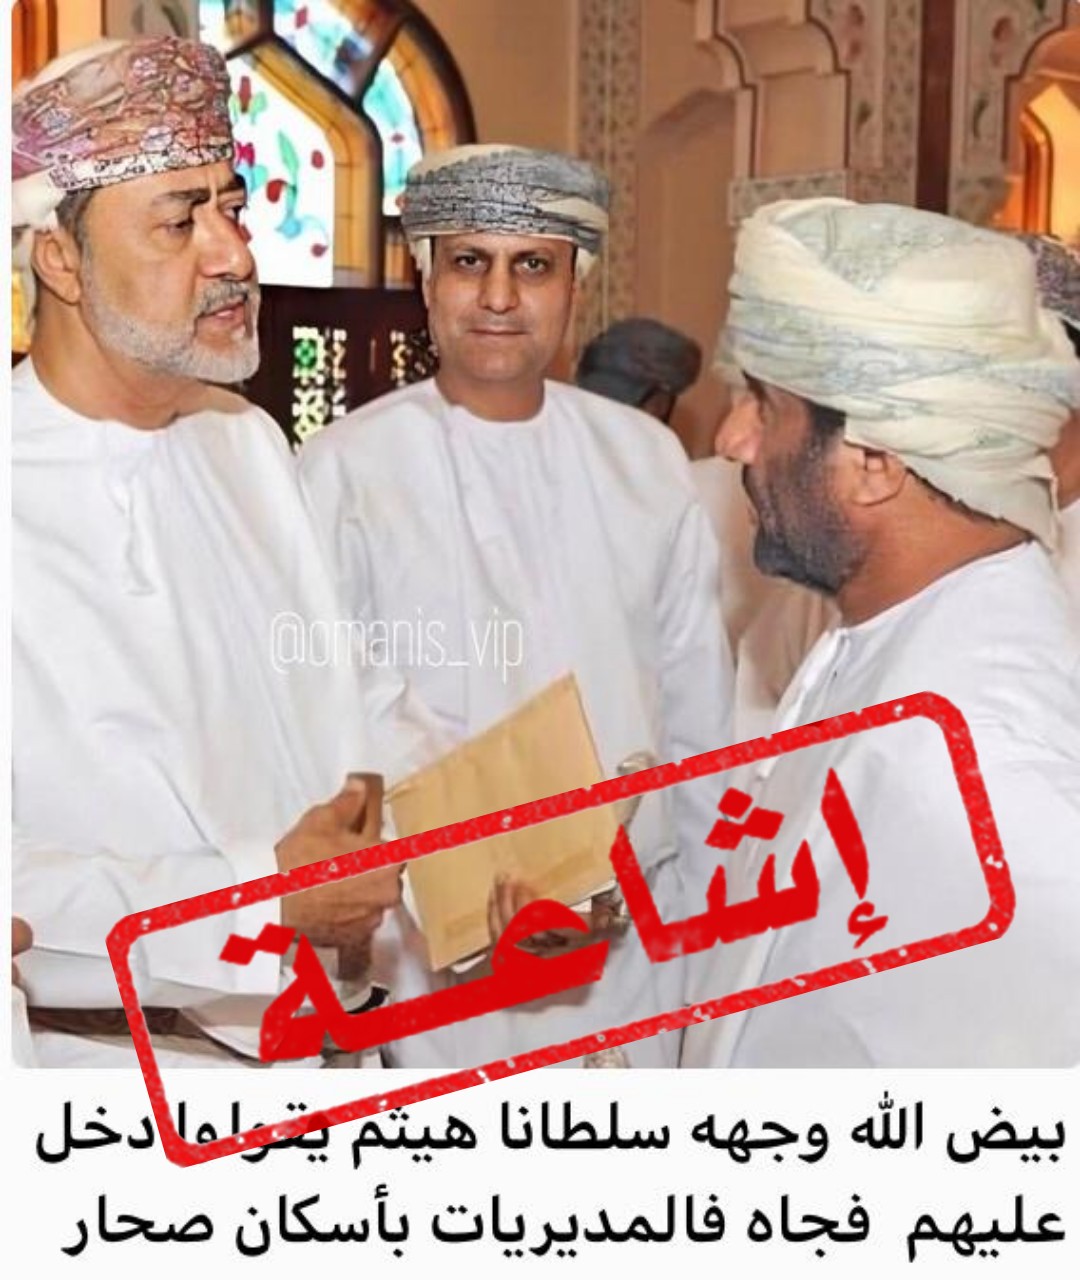 لا صحة لما يتداول عن زيارة جلالة السلطان لدائرة الاسكان بولاية صحار